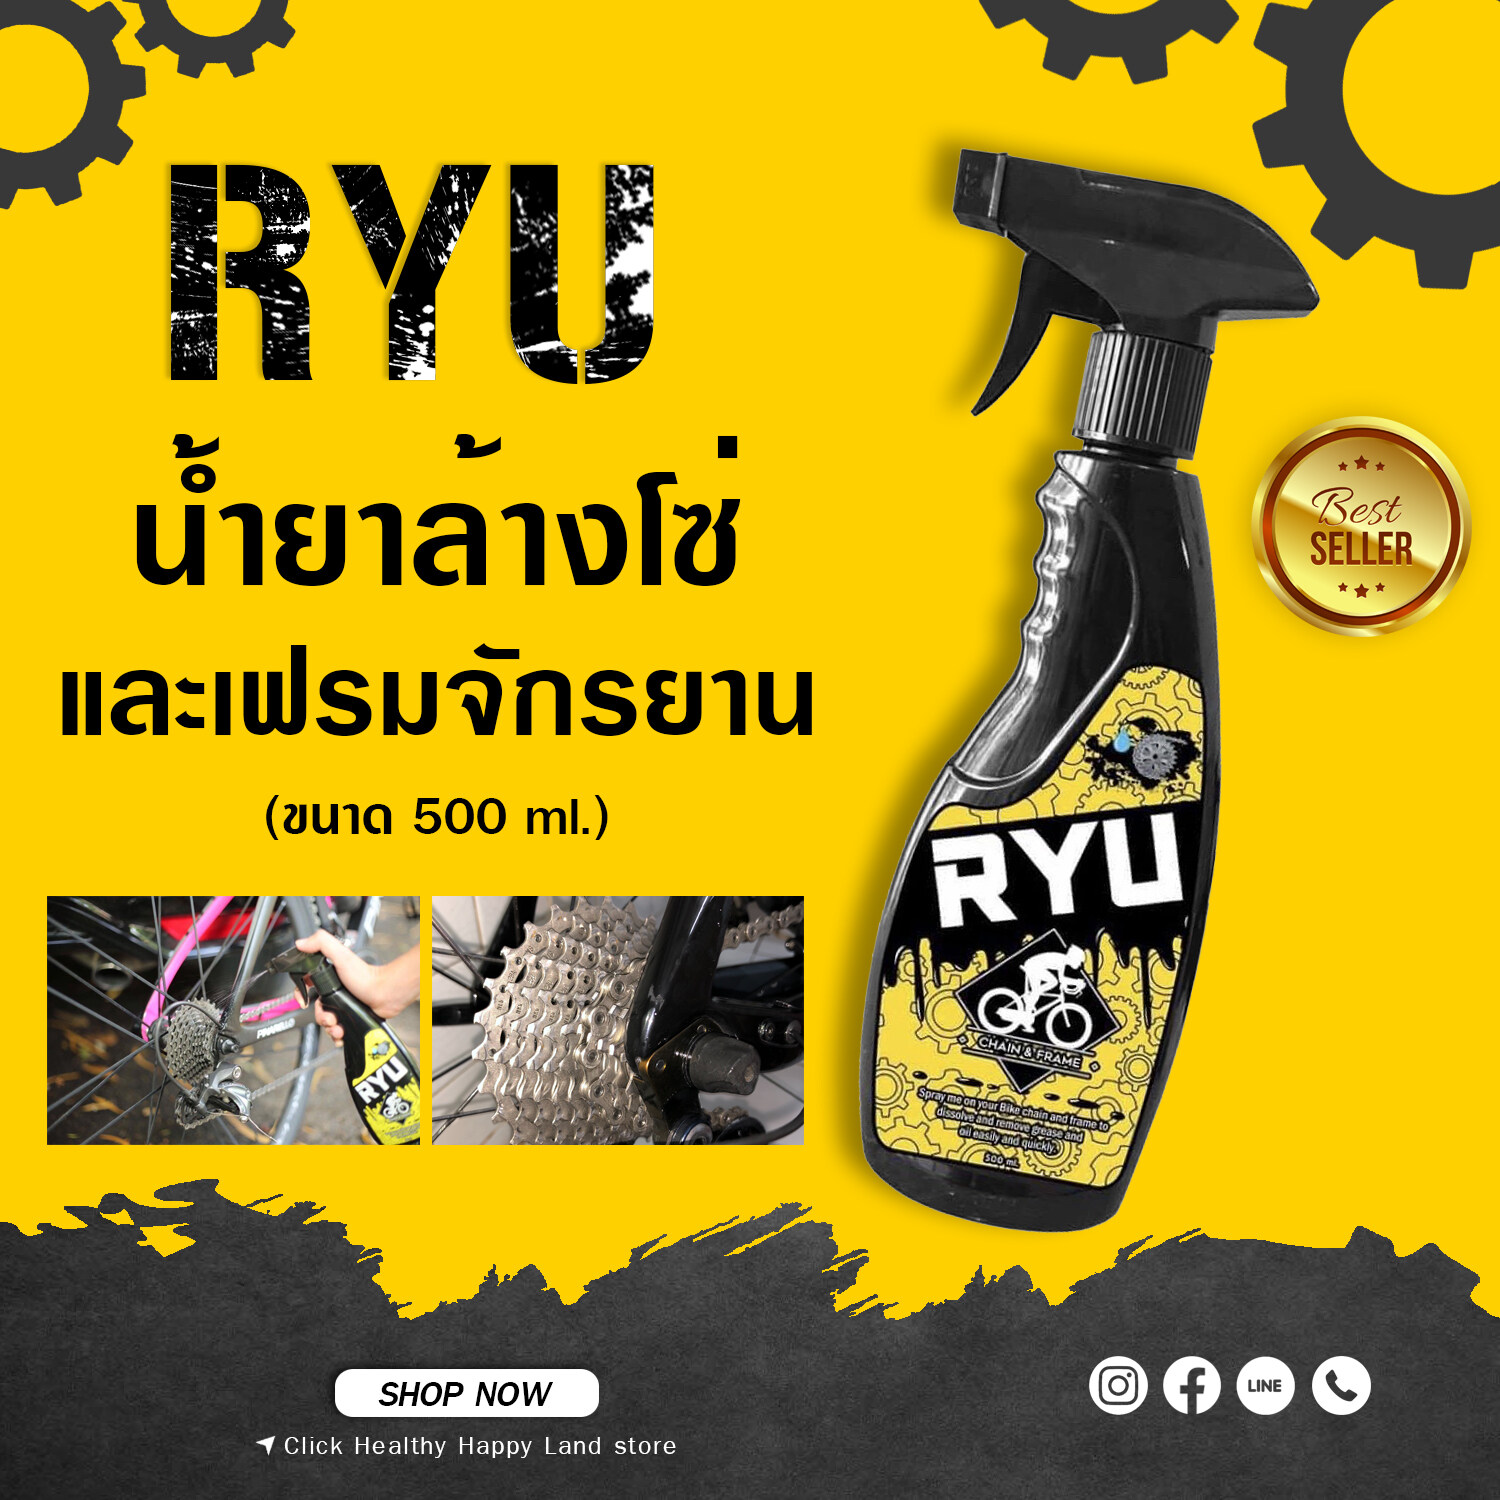 RYU น้ำยาล้างโซ่ และเฟรม จักรยาน ขนาด 500 ml.